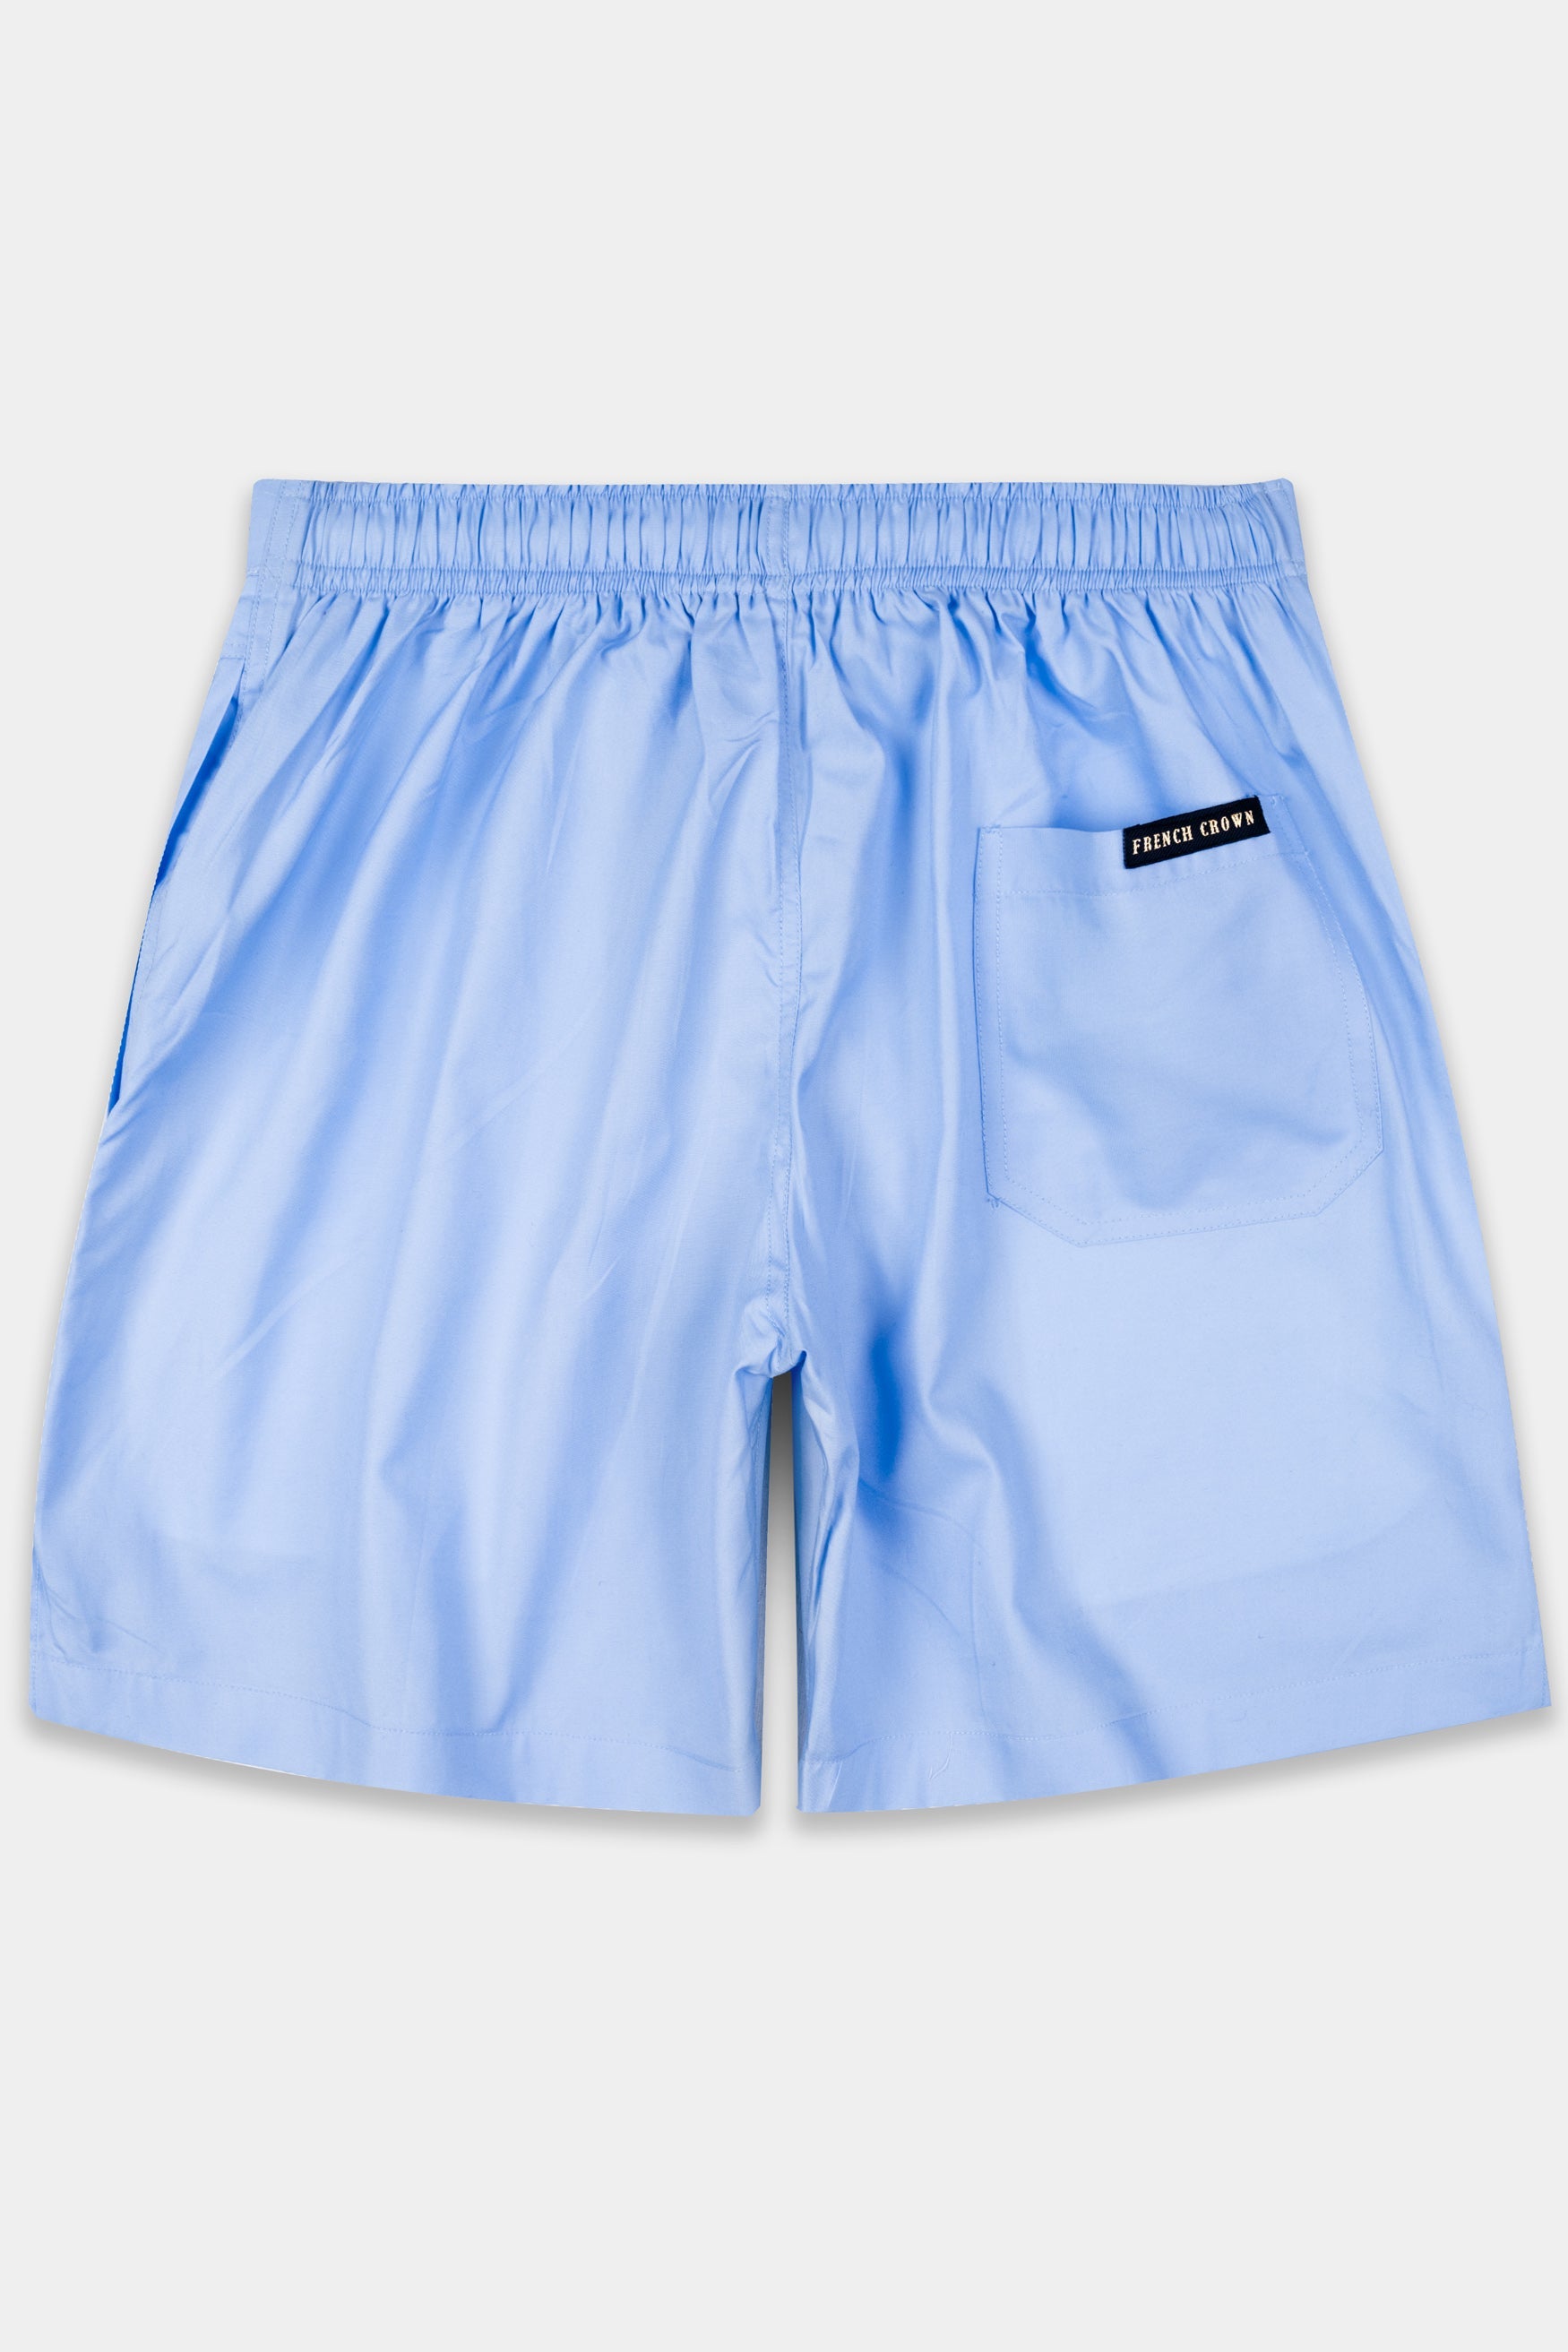 Pale Cerulean Blue Premium Cotton Shorts